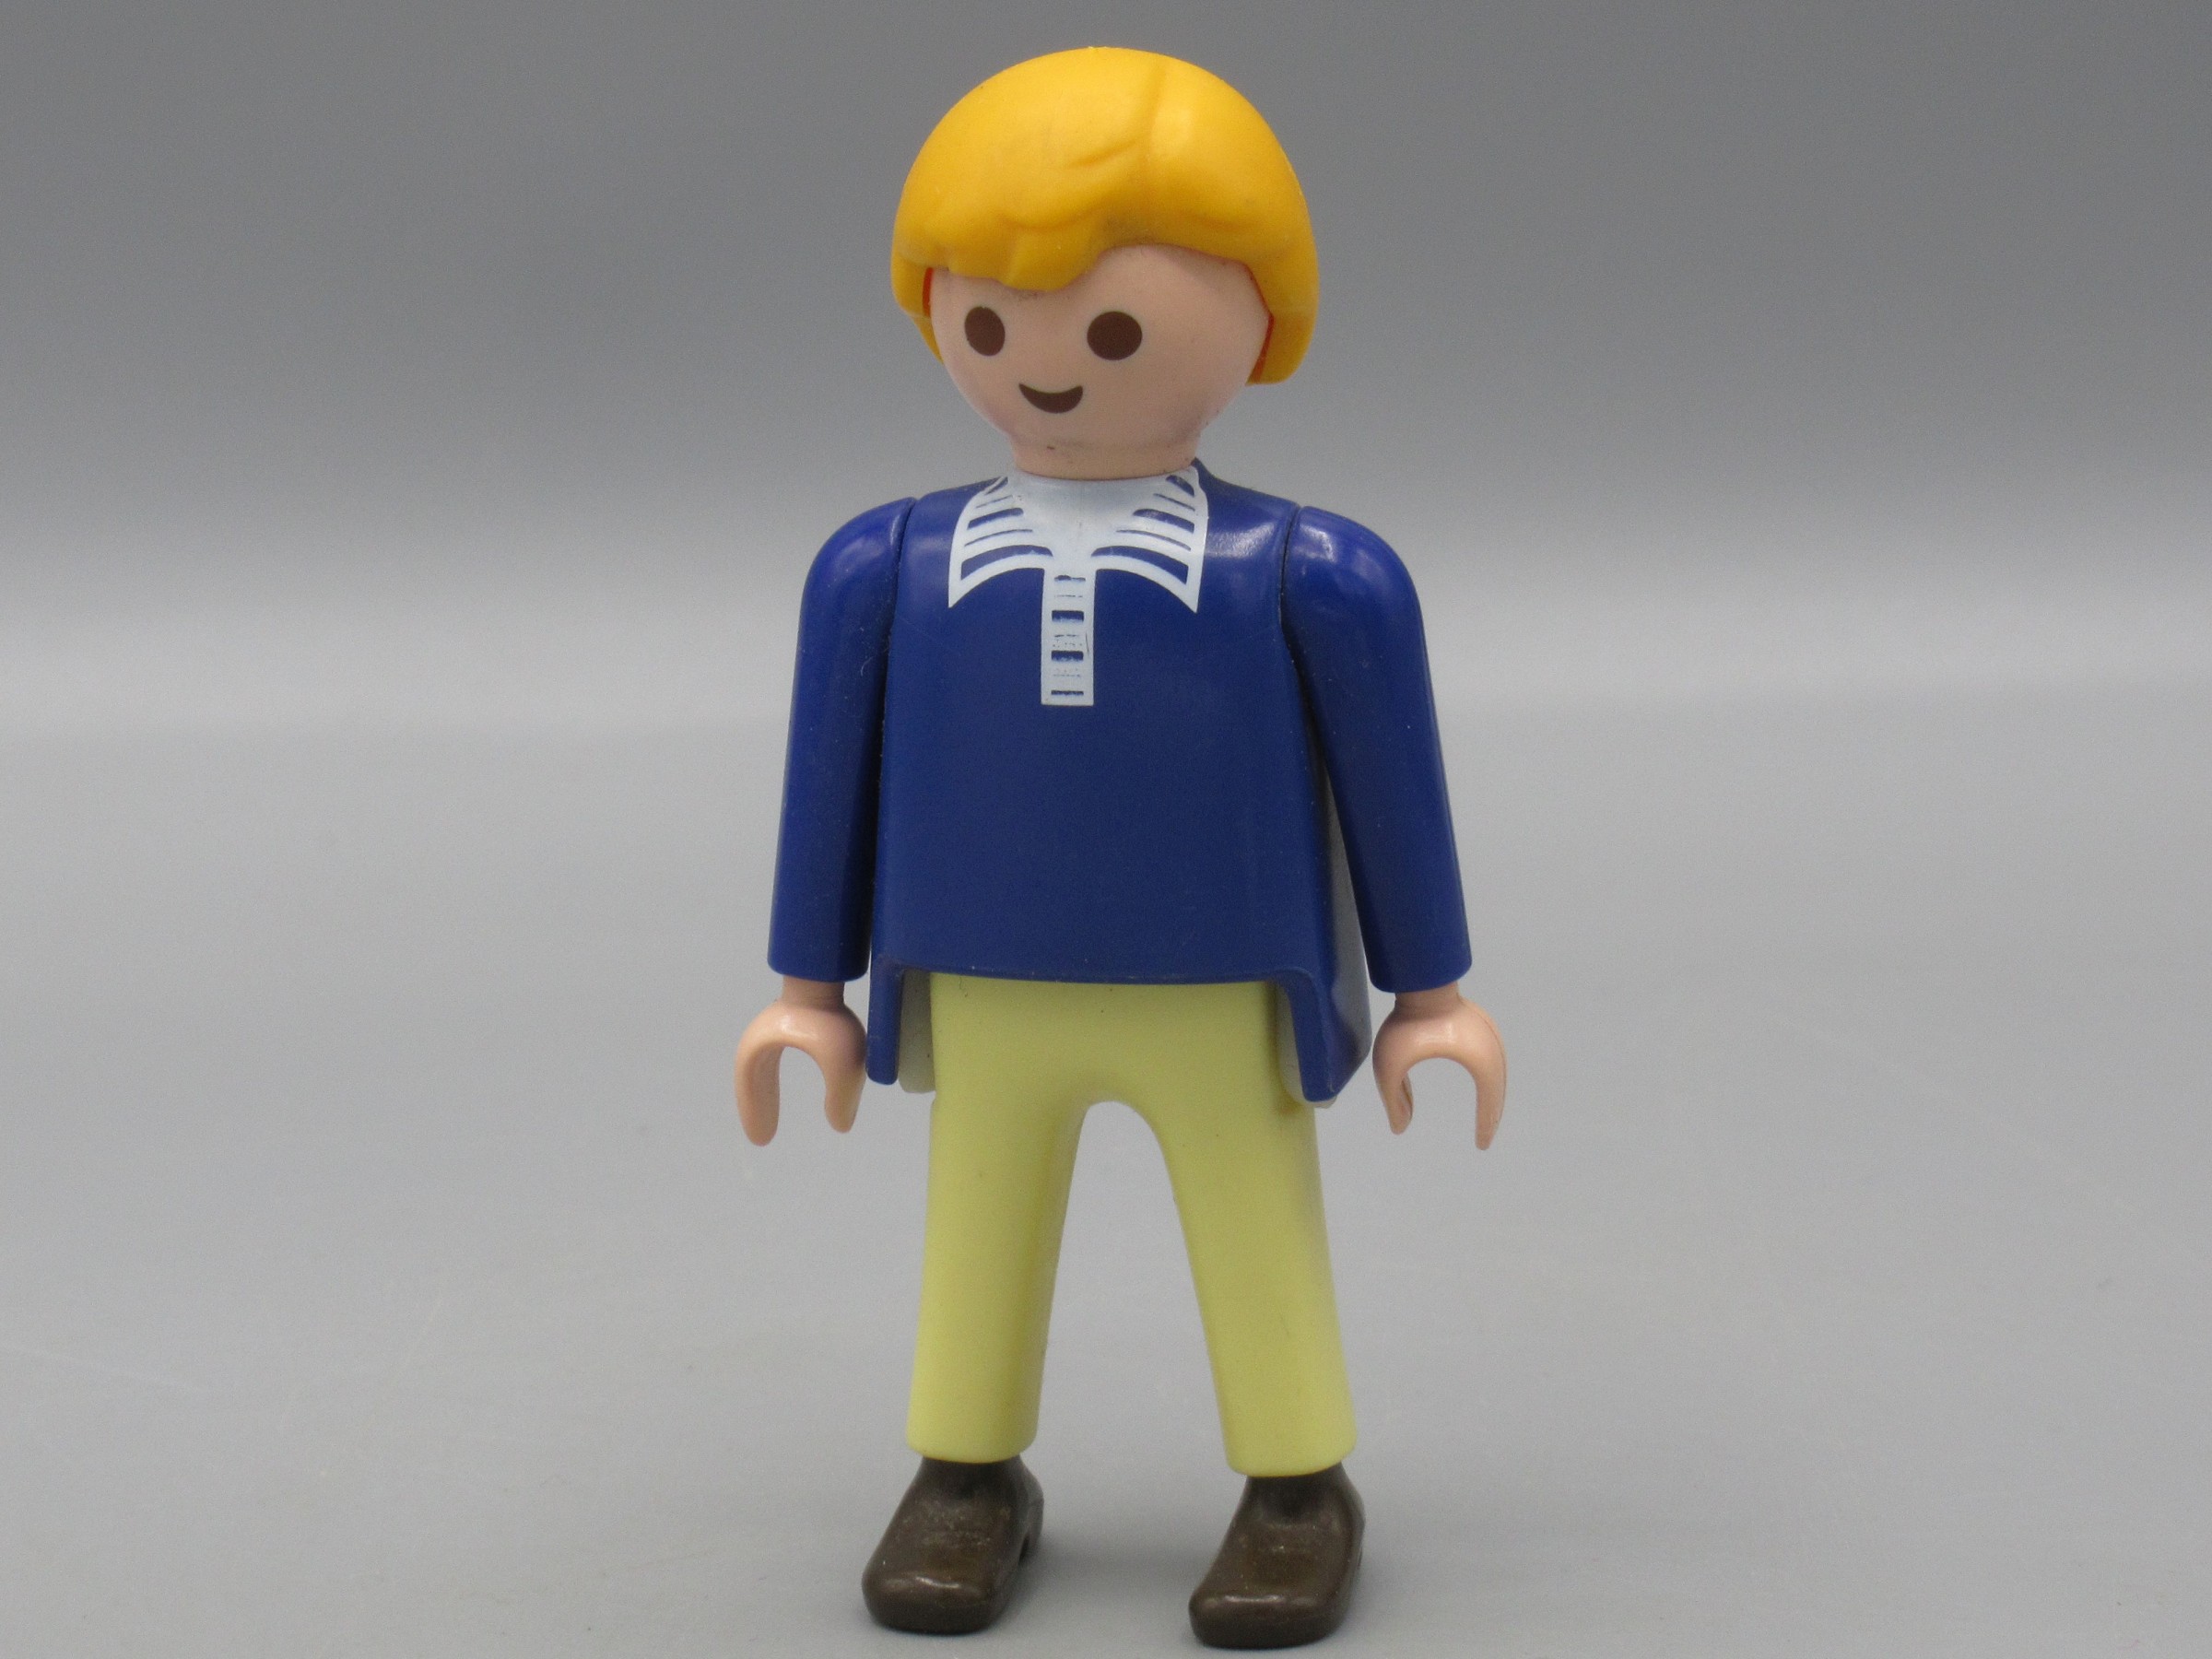 Un personnage modèle : Homme en salopette de la marque PLAYMOBIL 1990.